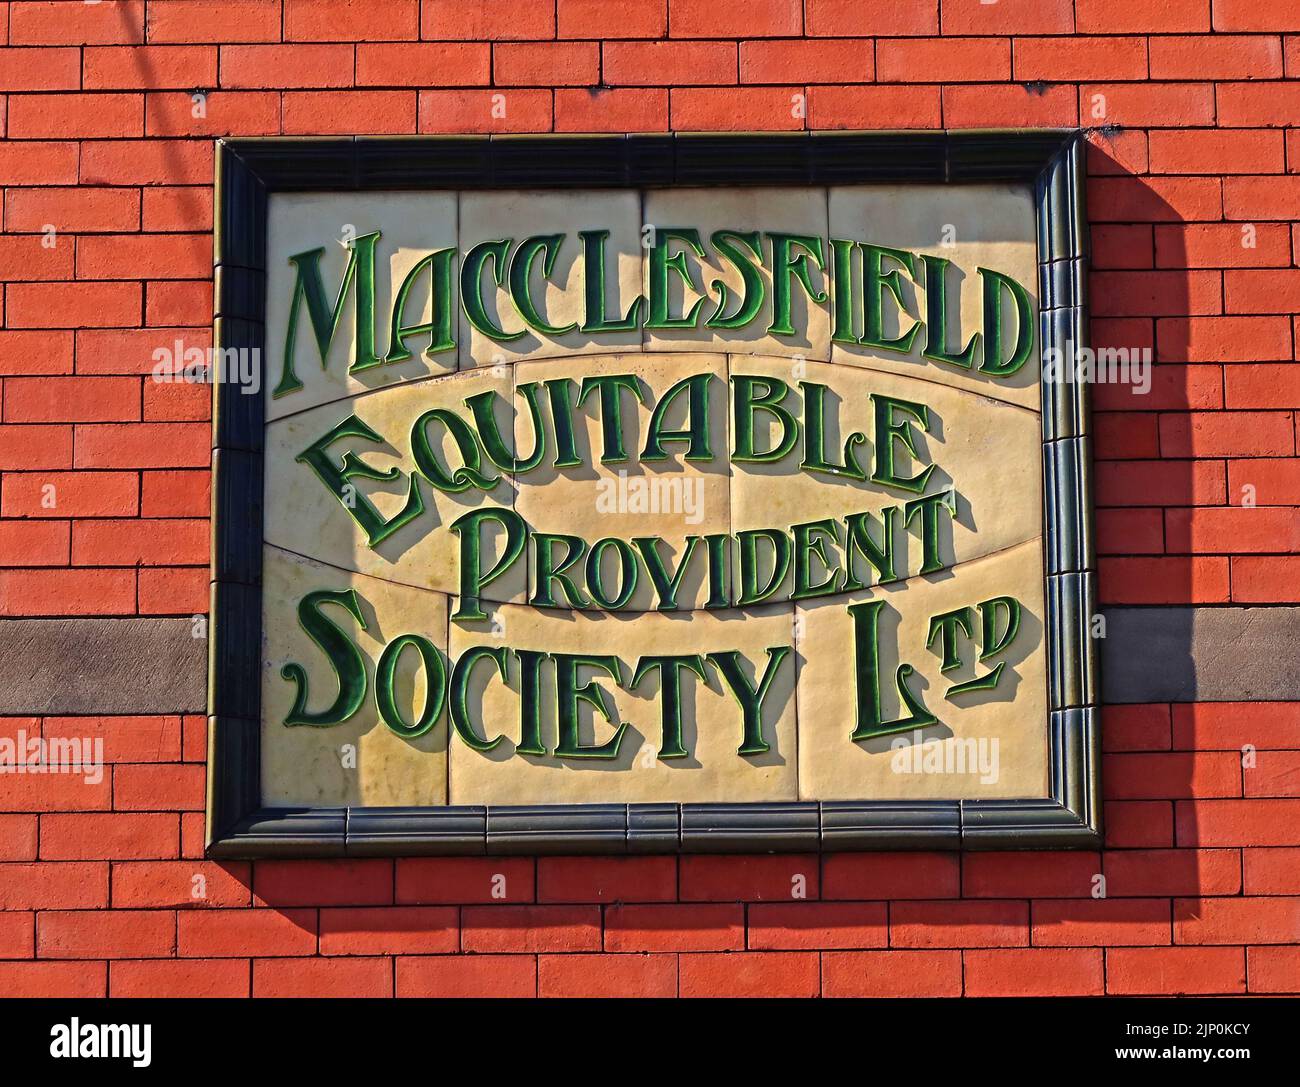 MacClesfield Equitable Provident Society Limited, alte geflieste Schilder, 1855, Ceshire, England, GROSSBRITANNIEN, SK11 6UD Stockfoto